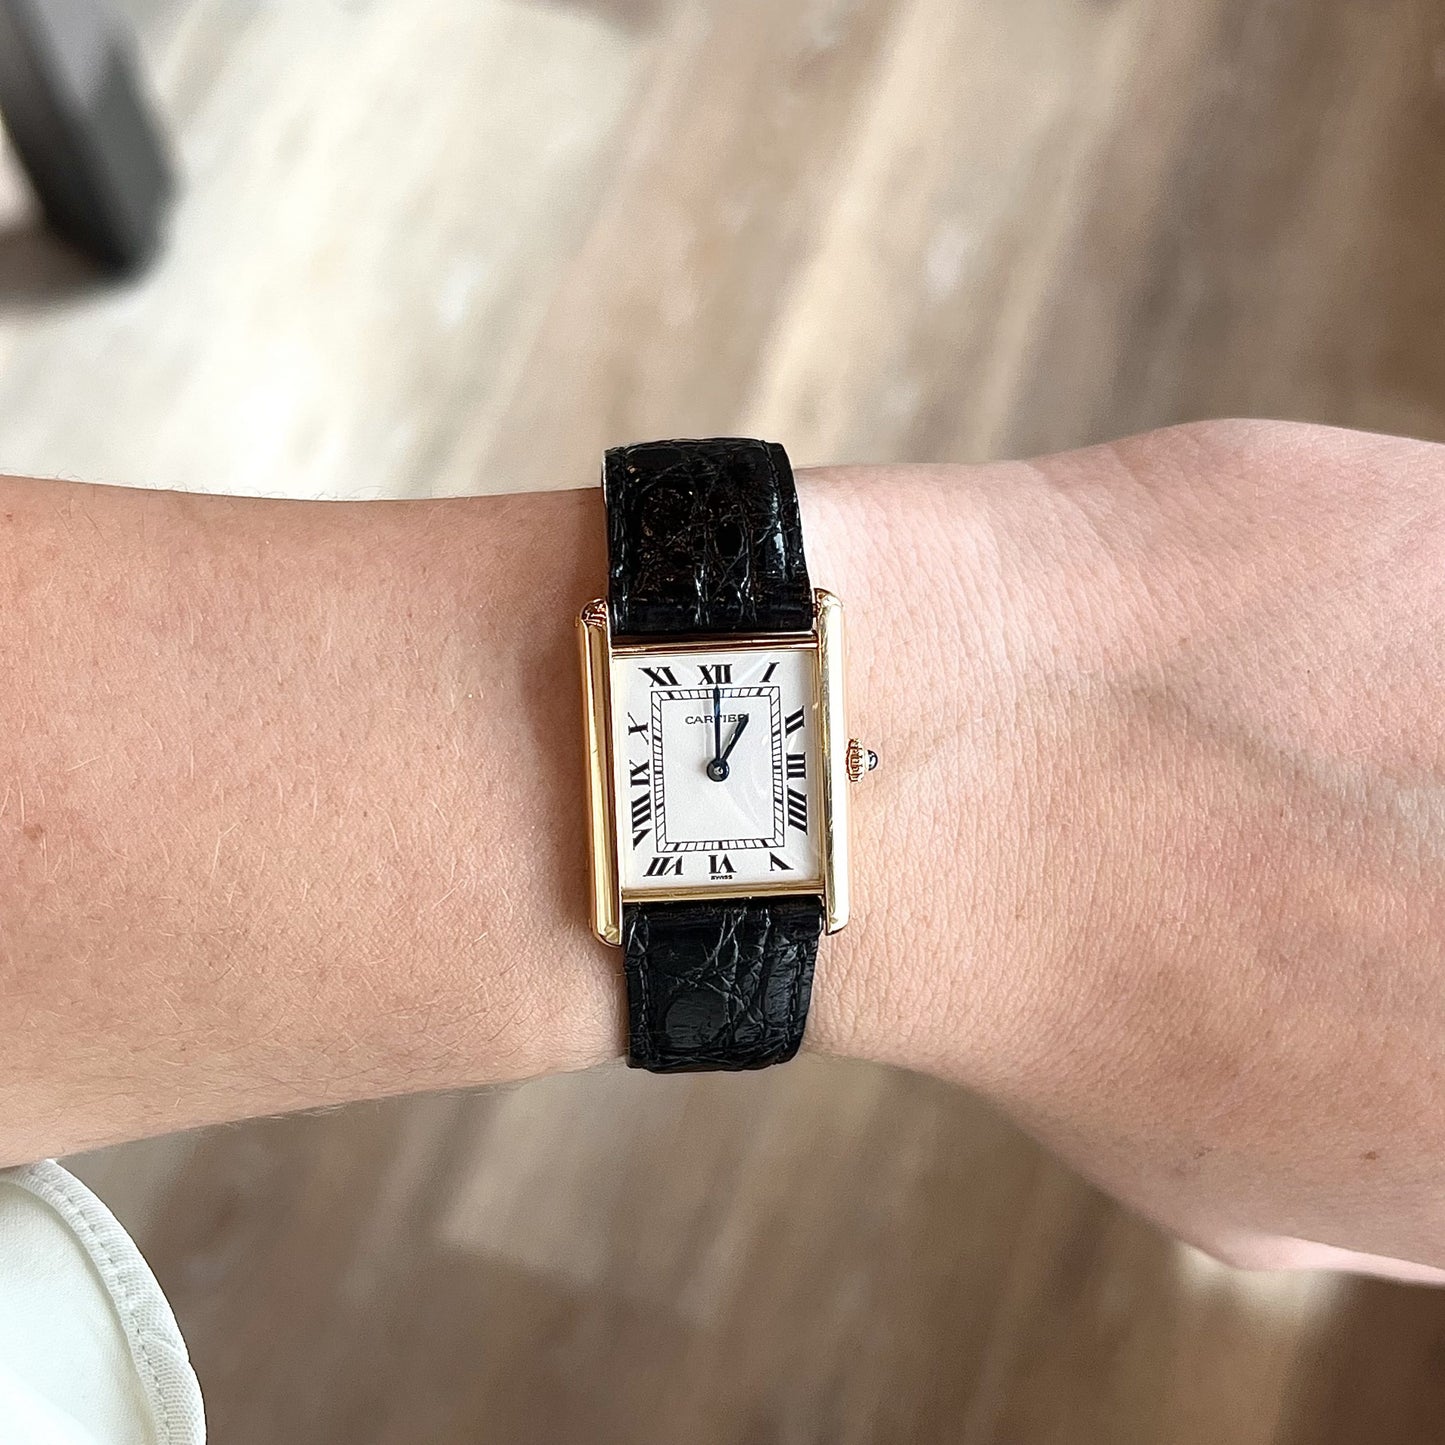 Cartier Tank Louis Small Silver Dial 18kt Rose Gold Women's Watch